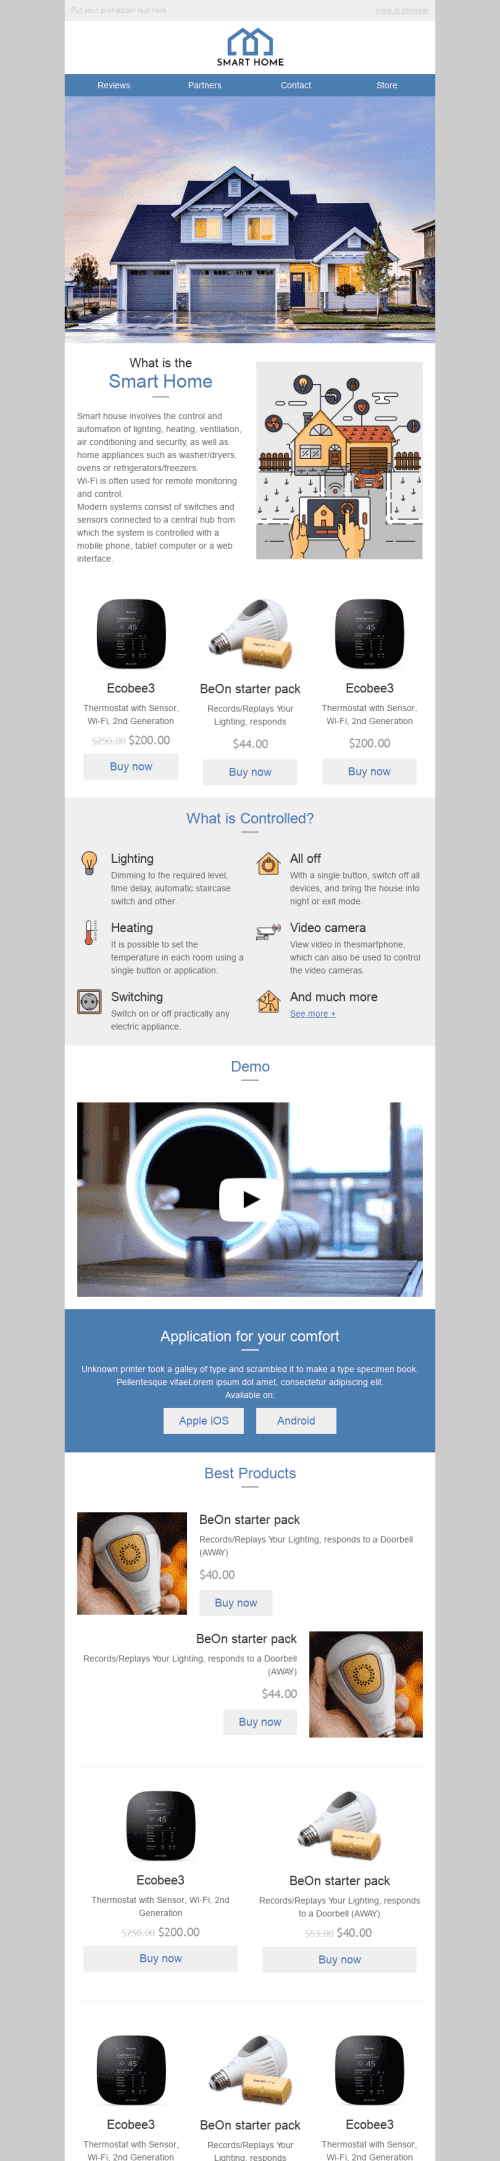 Modello Email Promo "Casa intelligente" per il settore industriale di Arredamento, interni e fai da te Visualizzazione mobile